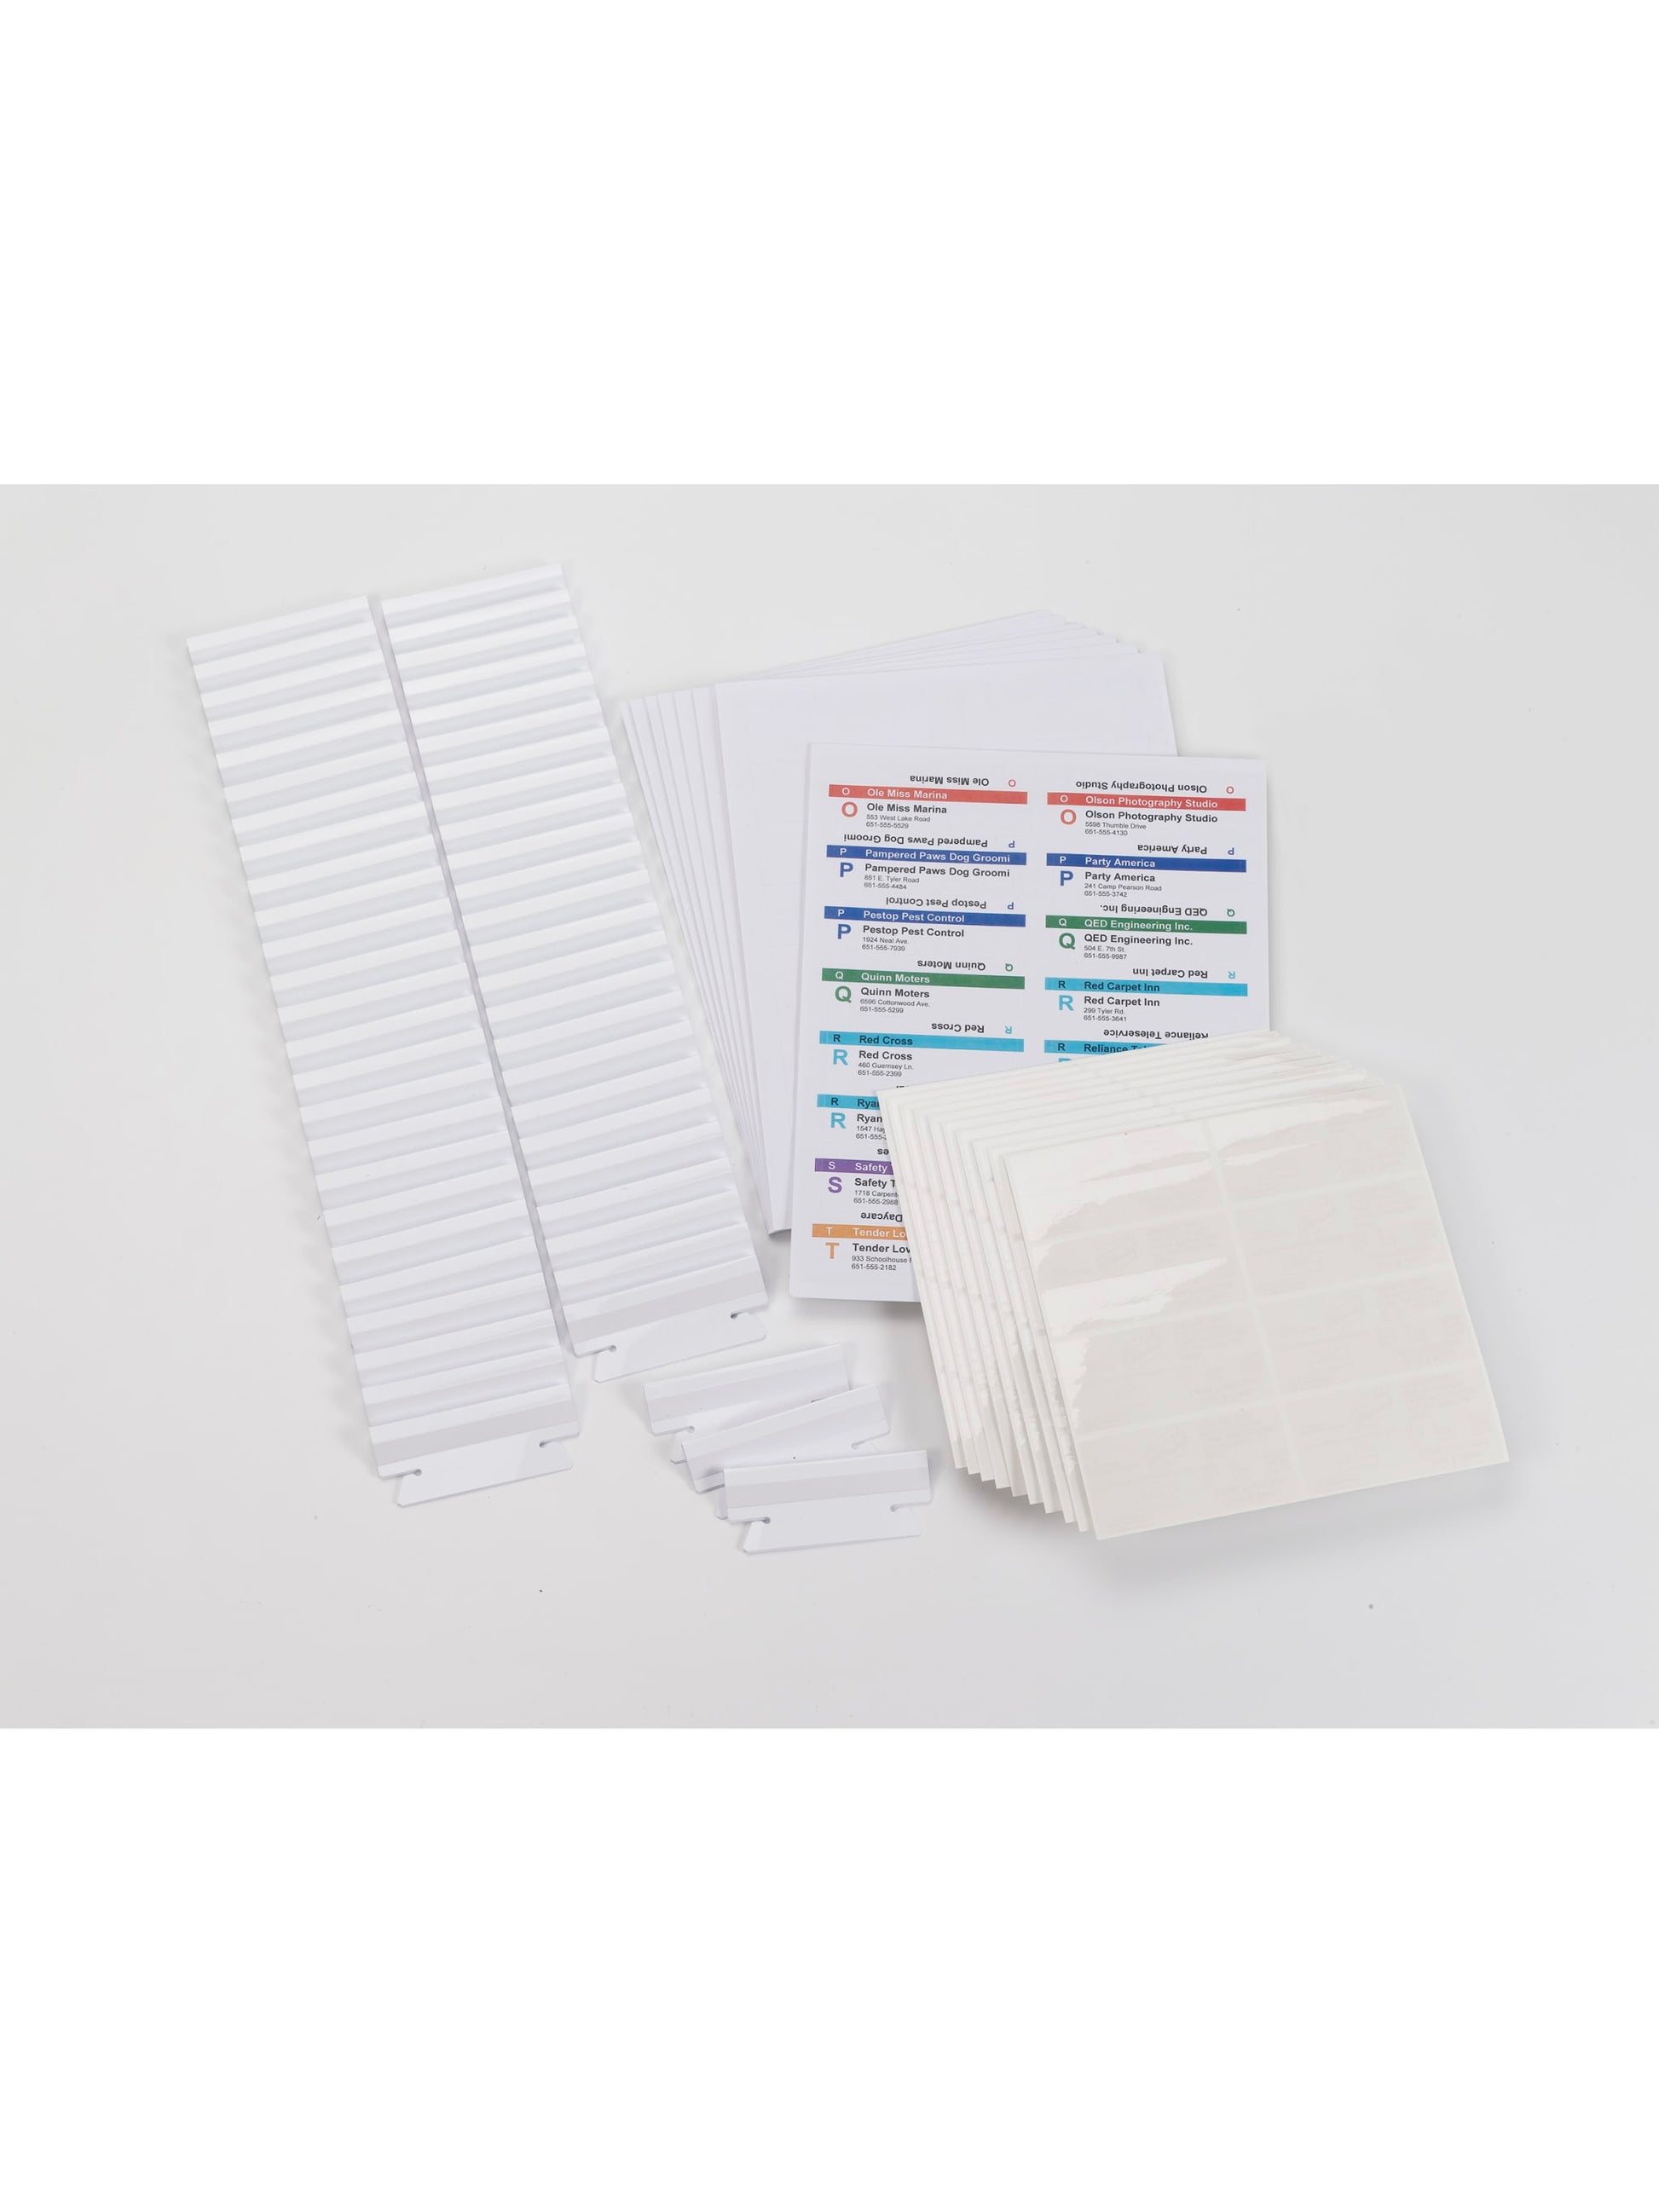 Viewables® hanging File Folder Label Kit, White Color, N/A Size, Set of 1, 086486649056